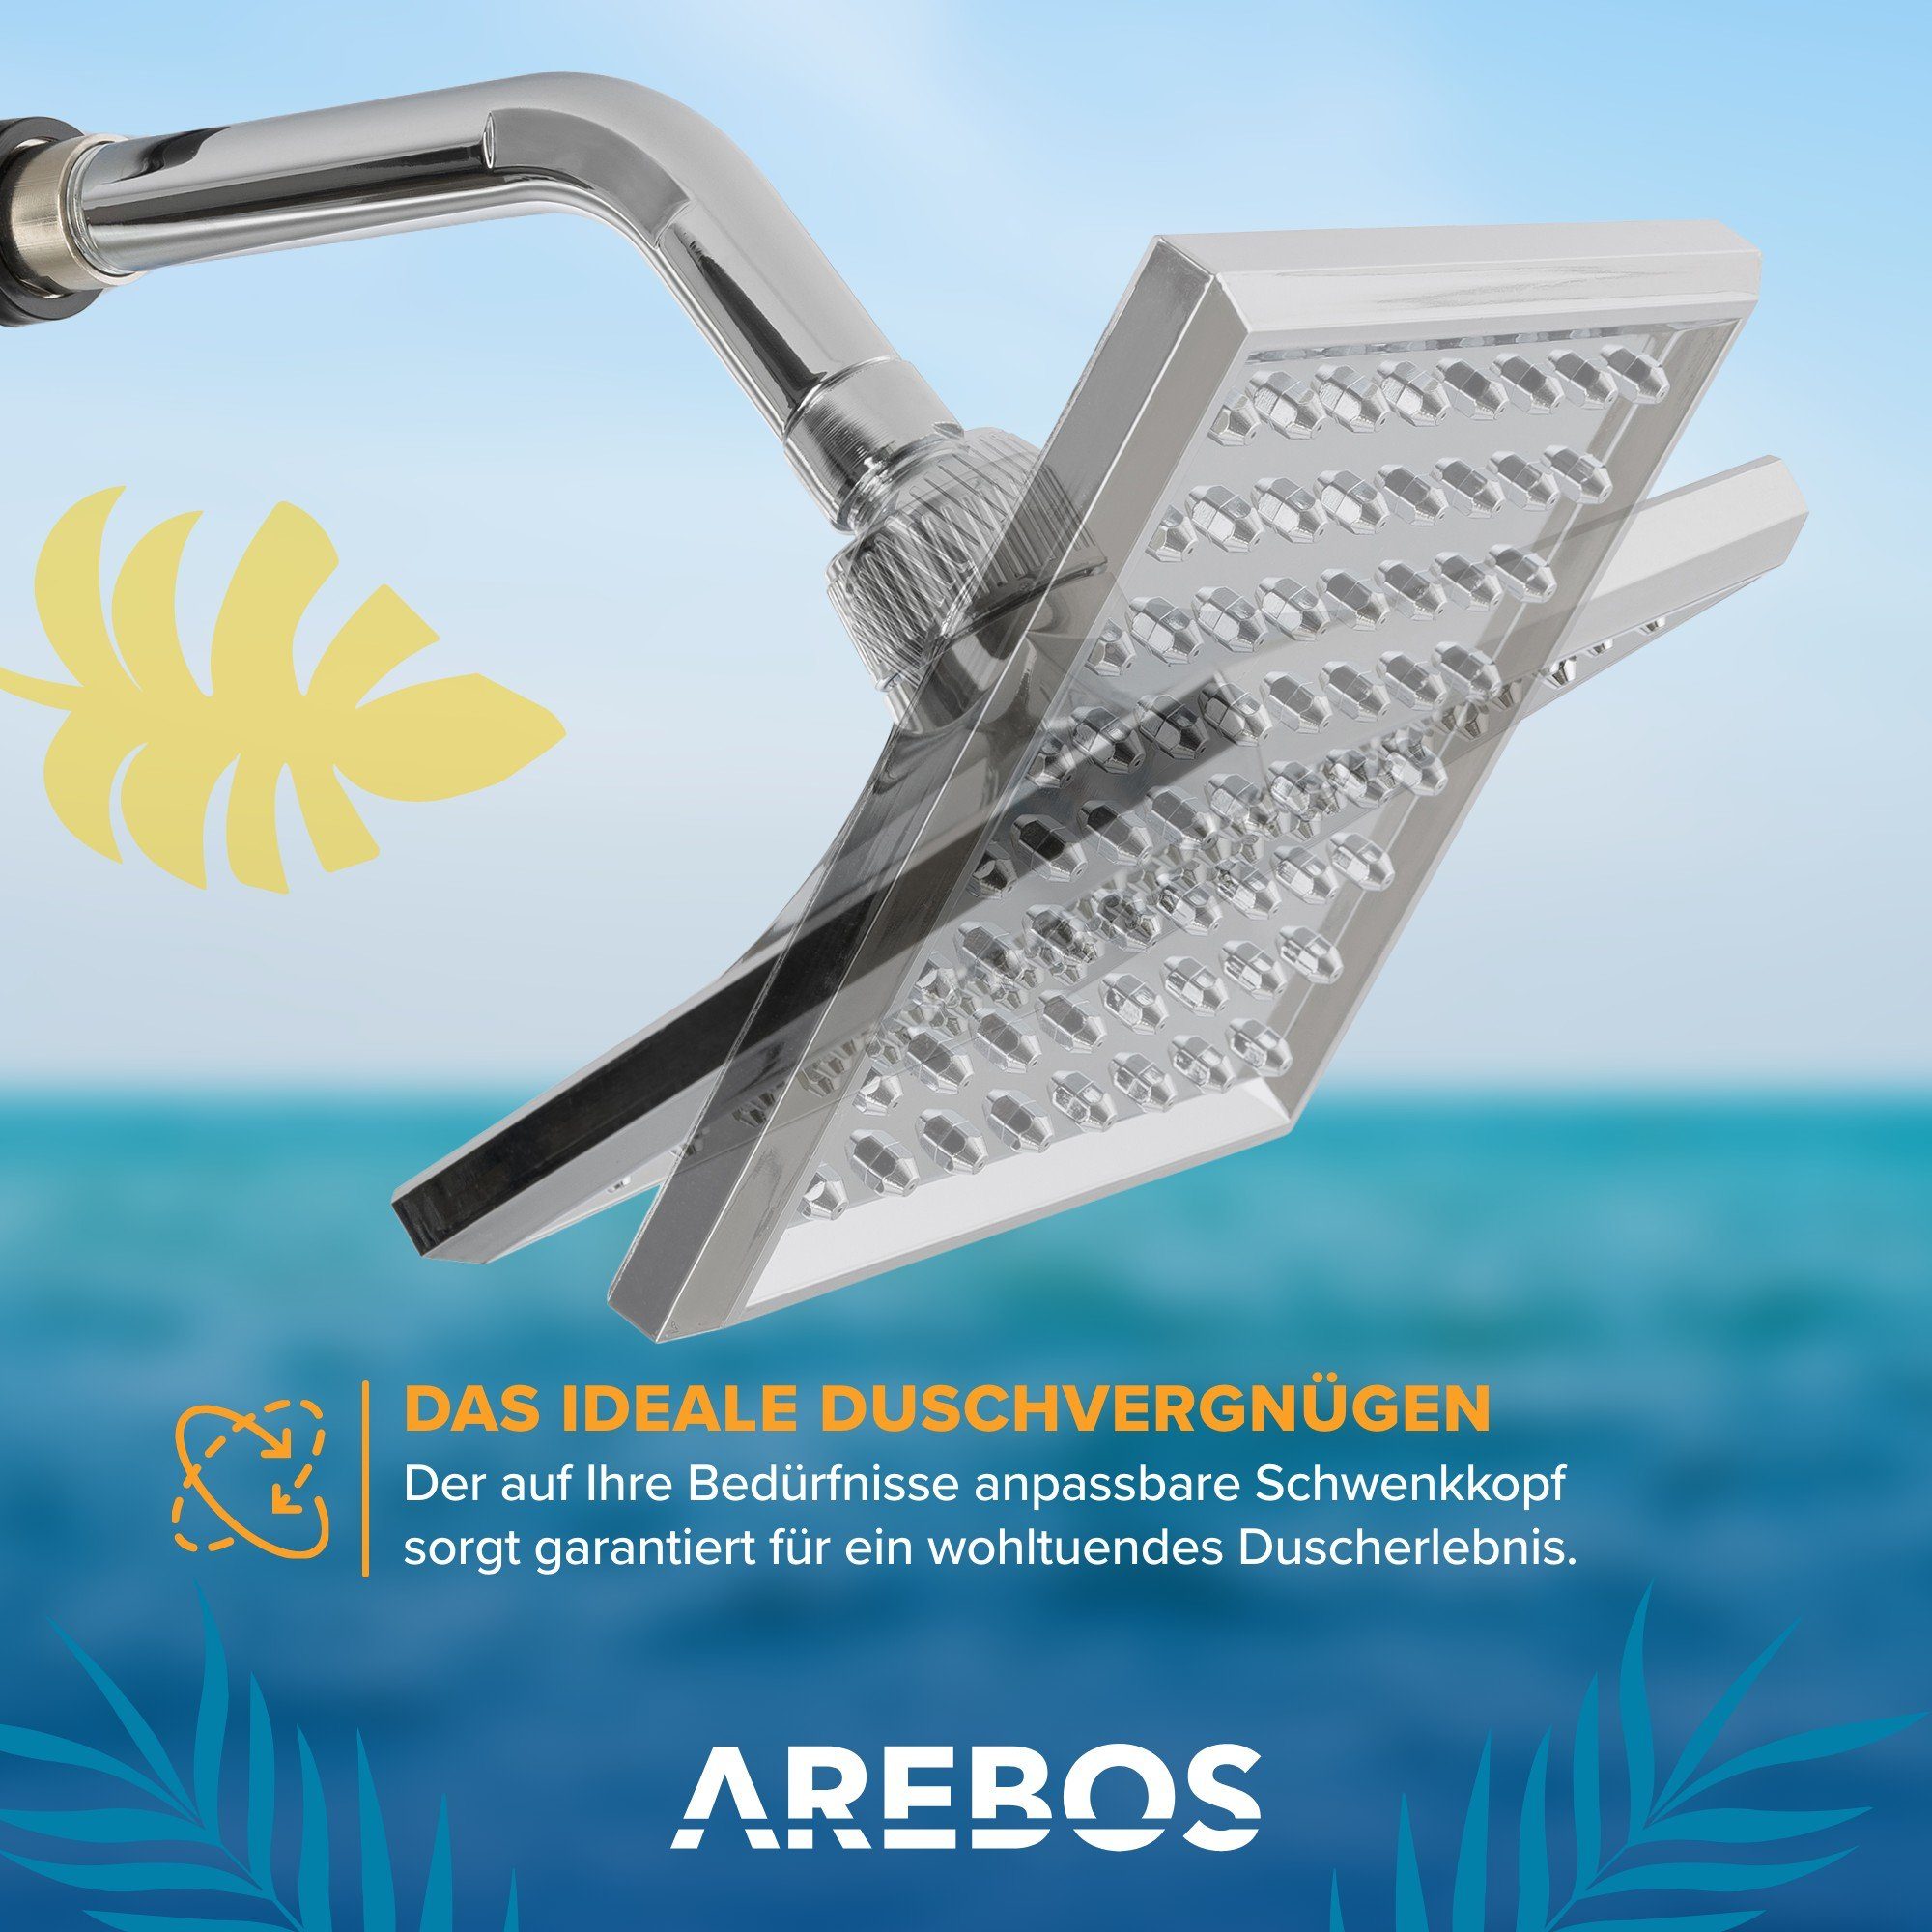 Arebos Solarduschen, eckiger runder / Regenduschkopf für Duschbrause,